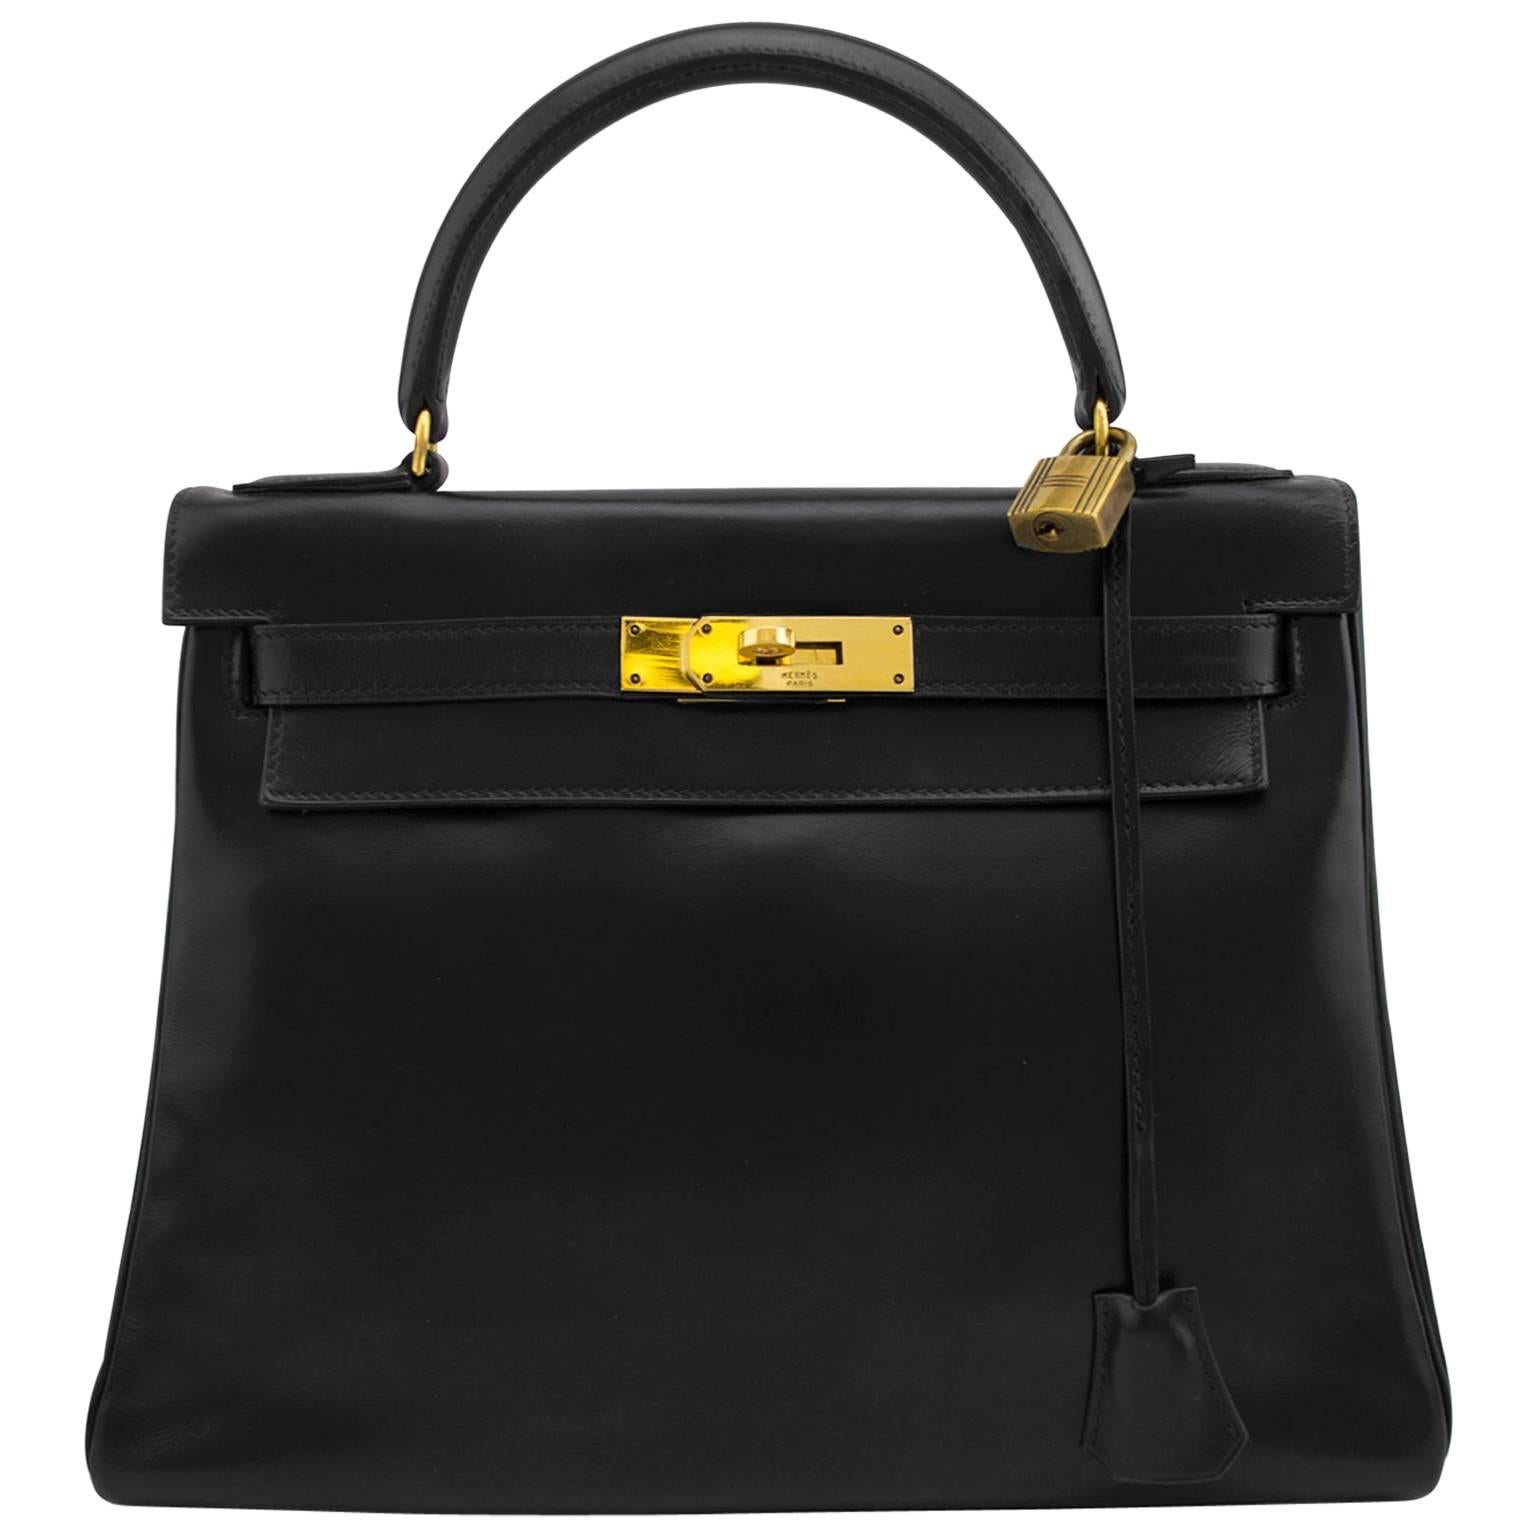 Hermes for Bonwit Teller Black Box Leather Supple 28cm Kelly Bag, 1963